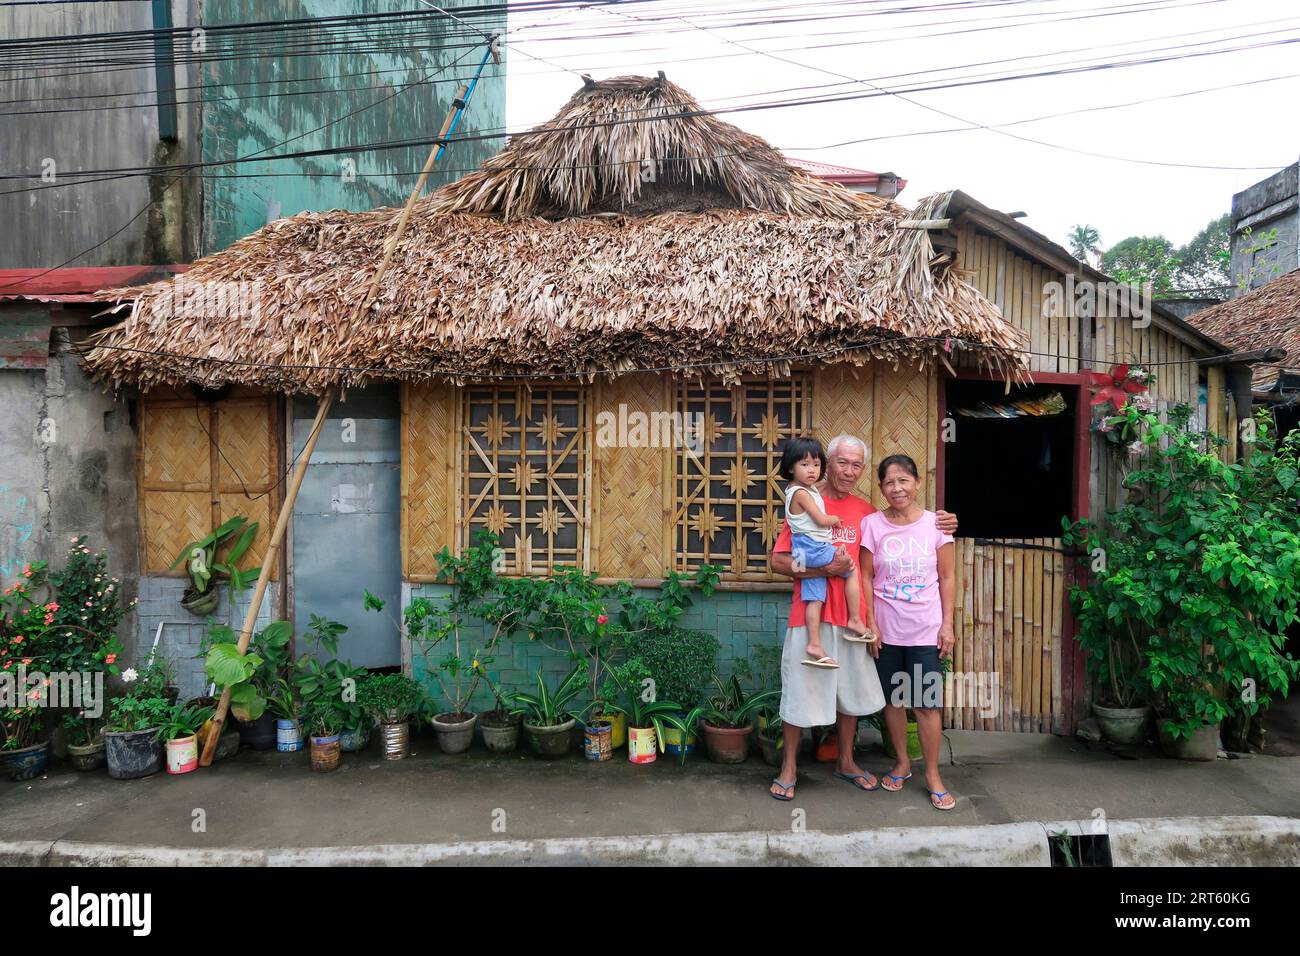 Grands-parents avec enfant devant une cabane en paille, ville de Legazpi, province d'Albay, Philippines Banque D'Images